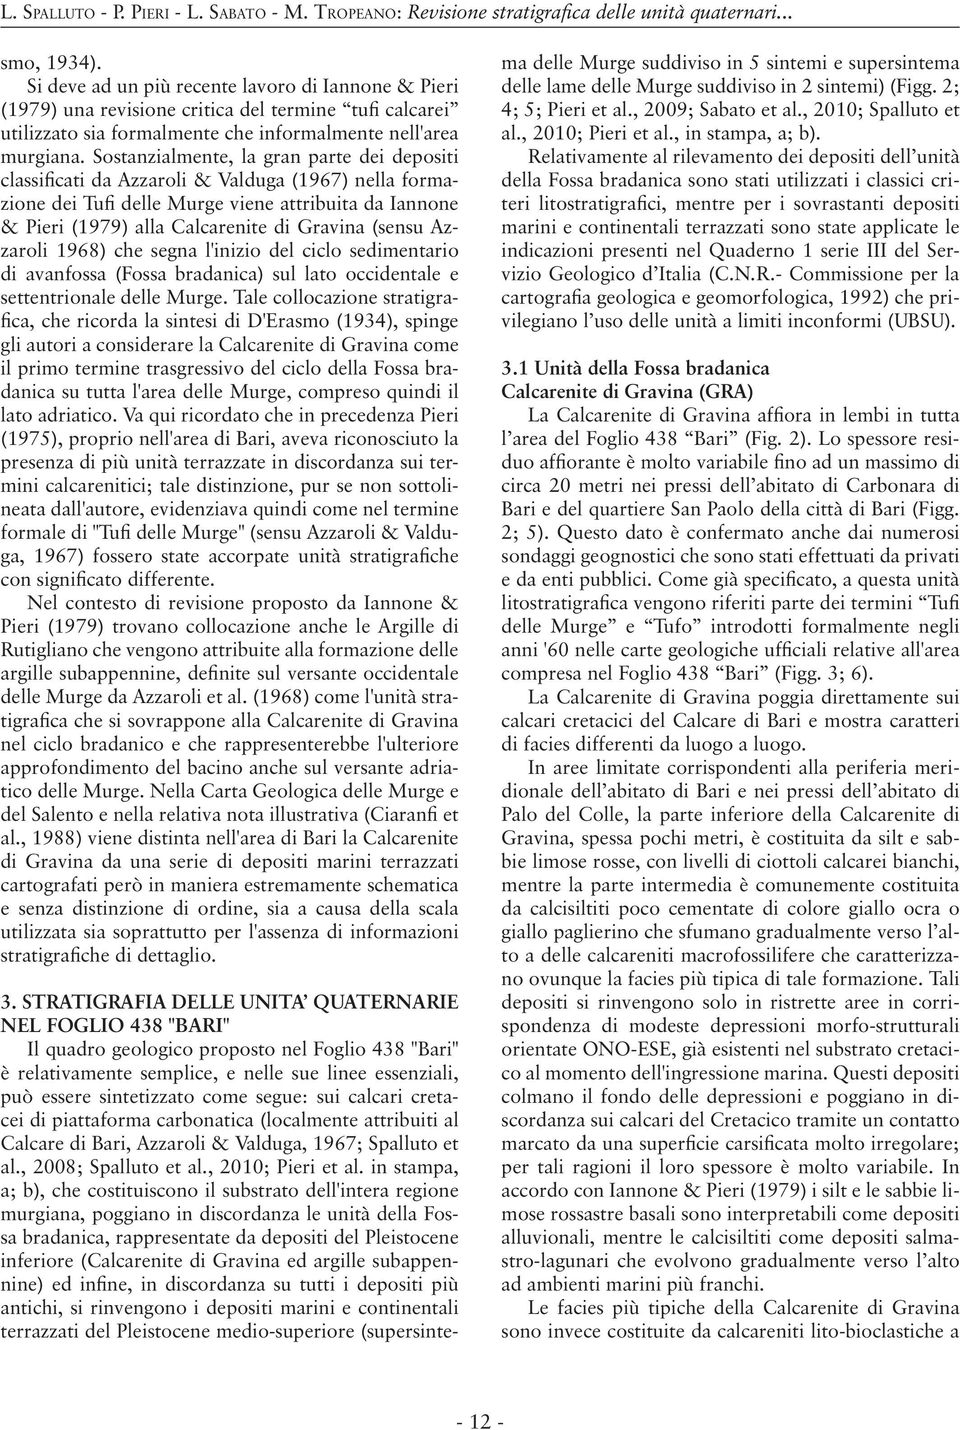 Sostanzialmente, la gran parte dei depositi classificati da Azzaroli & Valduga (1967) nella formazione dei Tufi delle Murge viene attribuita da Iannone & Pieri (1979) alla Calcarenite di Gravina